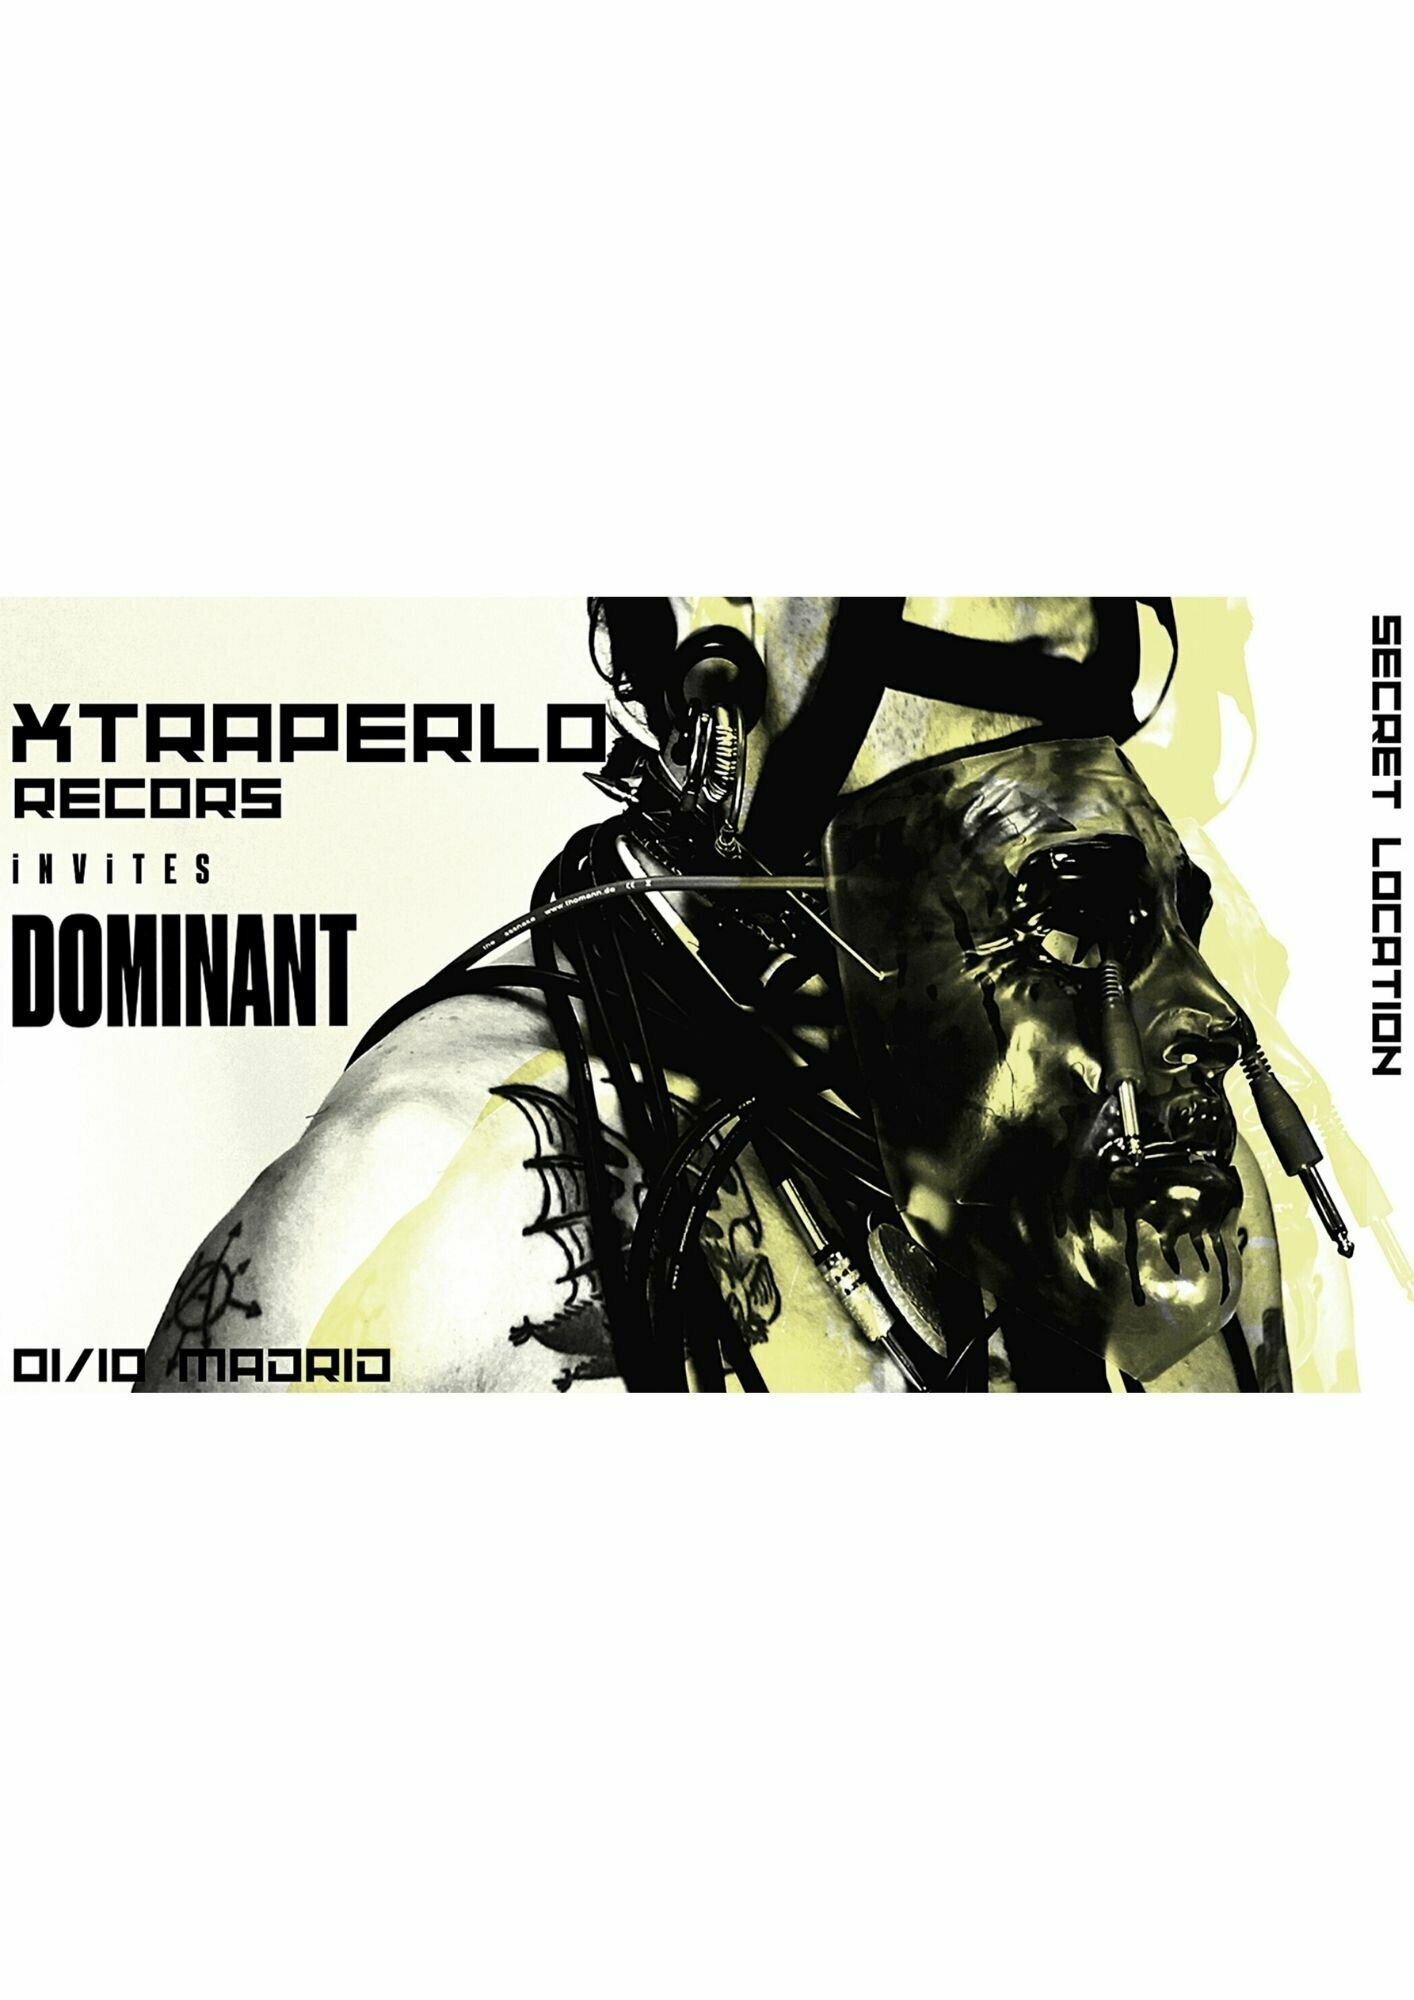 xtraperlo_+_dominant